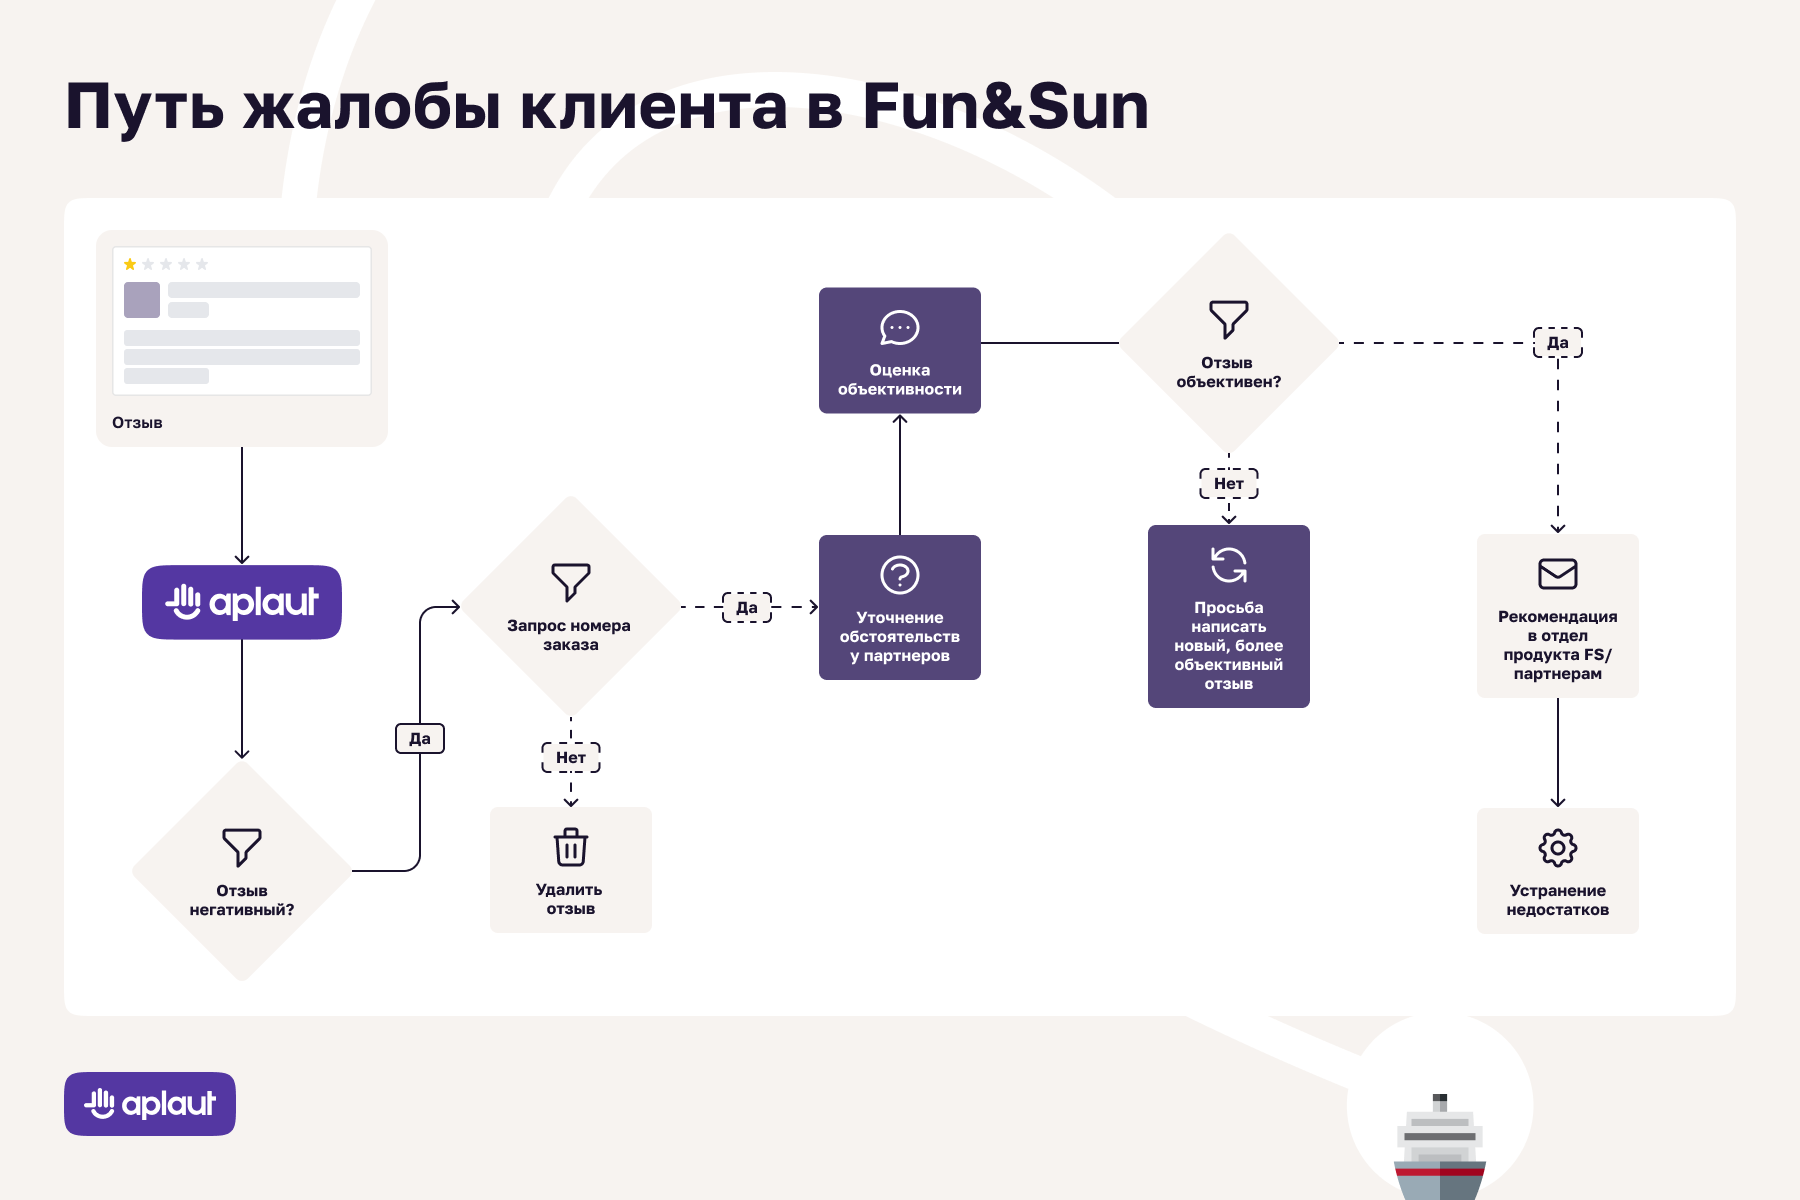 Отзывы в туризме: как Fun&Sun работает с пользовательским контентом